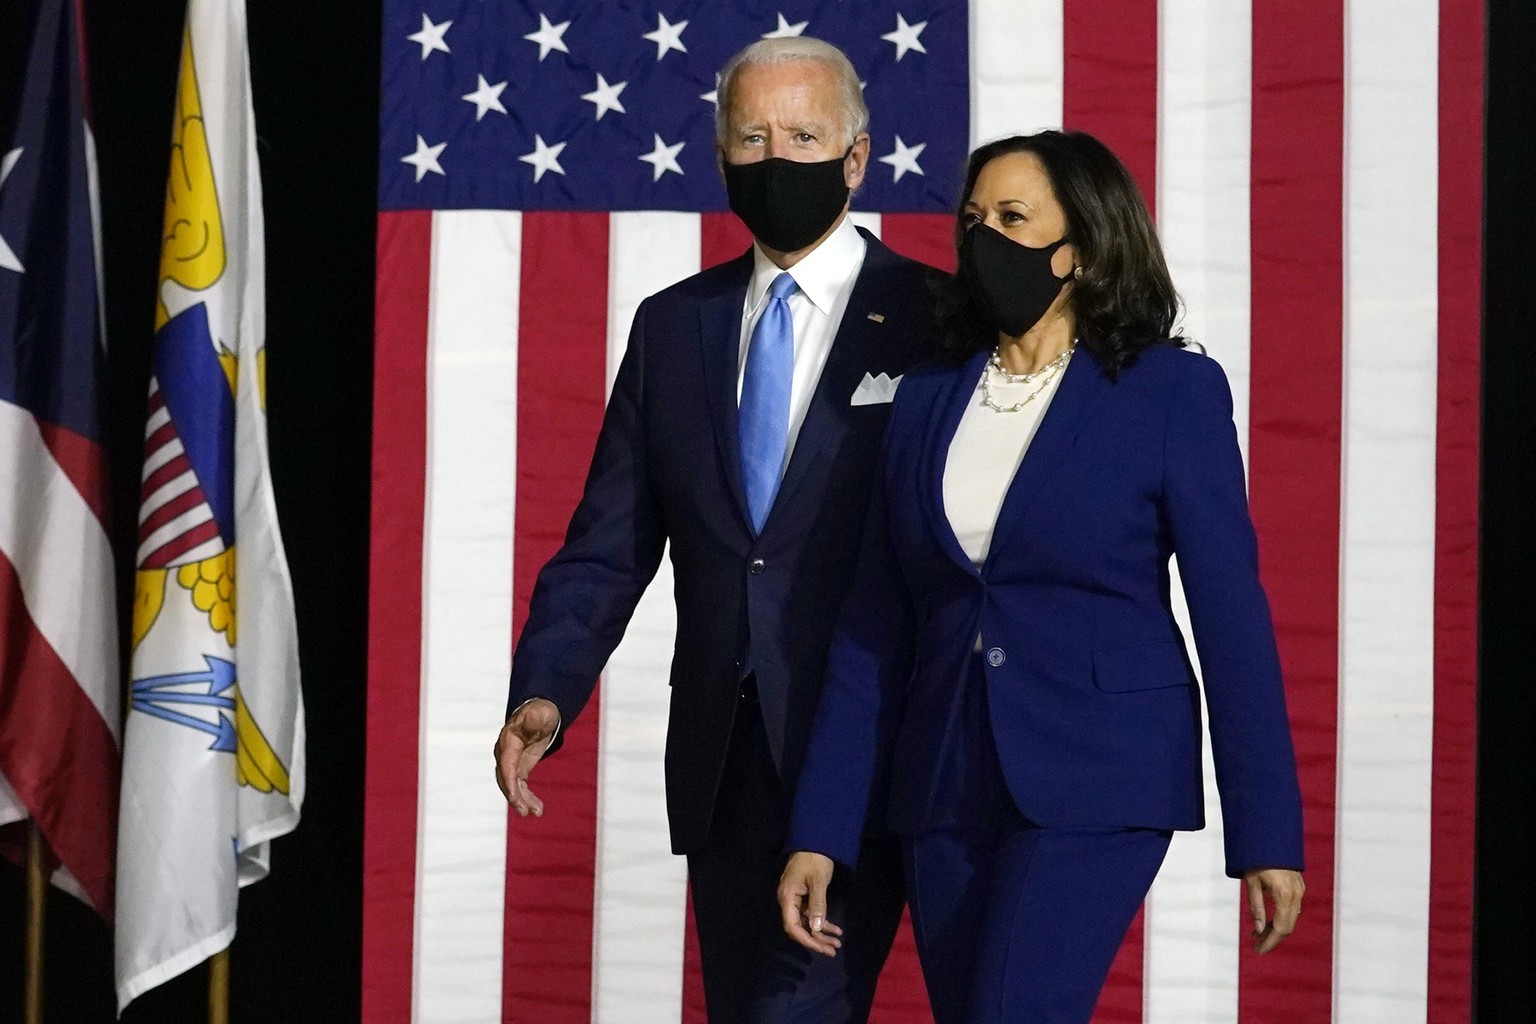 12.08.2020, USA, Wilmington: Joe Biden (l), designierter Präsidentschaftskandidat der US-Demokraten, und Kamala Harris, Senatorin in Kalifornien, kommen zu einer Pressekonferenz. Biden zieht mit der k ...